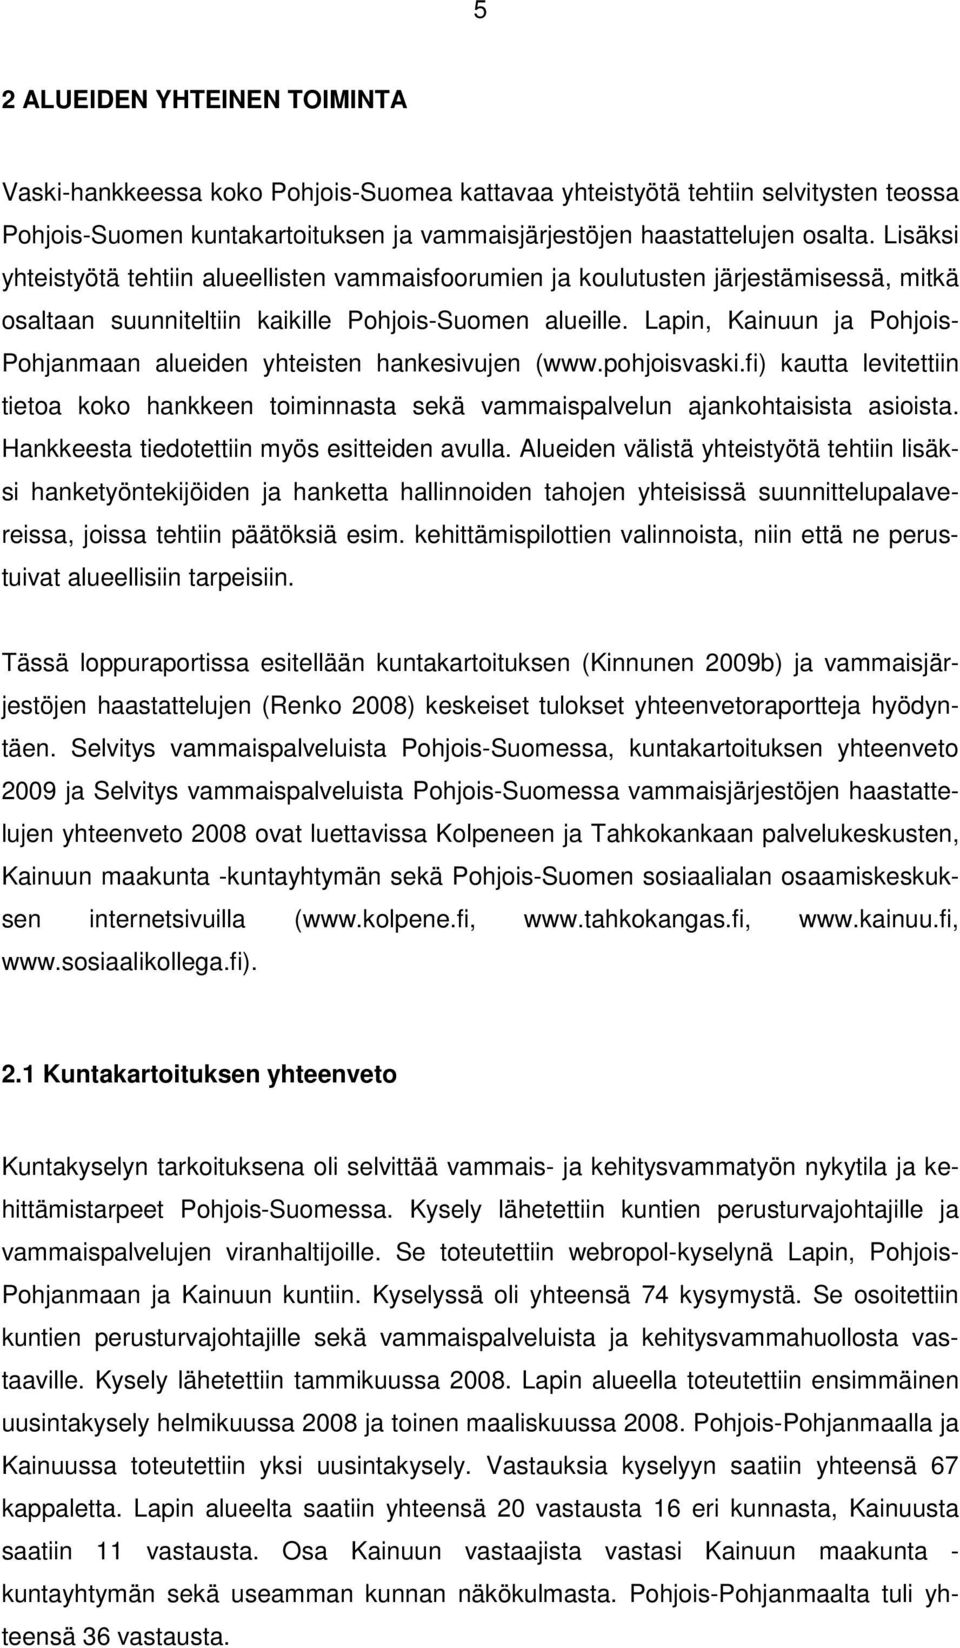 Lapin, Kainuun ja Pohjois- Pohjanmaan alueiden yhteisten hankesivujen (www.pohjoisvaski.fi) kautta levitettiin tietoa koko hankkeen toiminnasta sekä vammaispalvelun ajankohtaisista asioista.